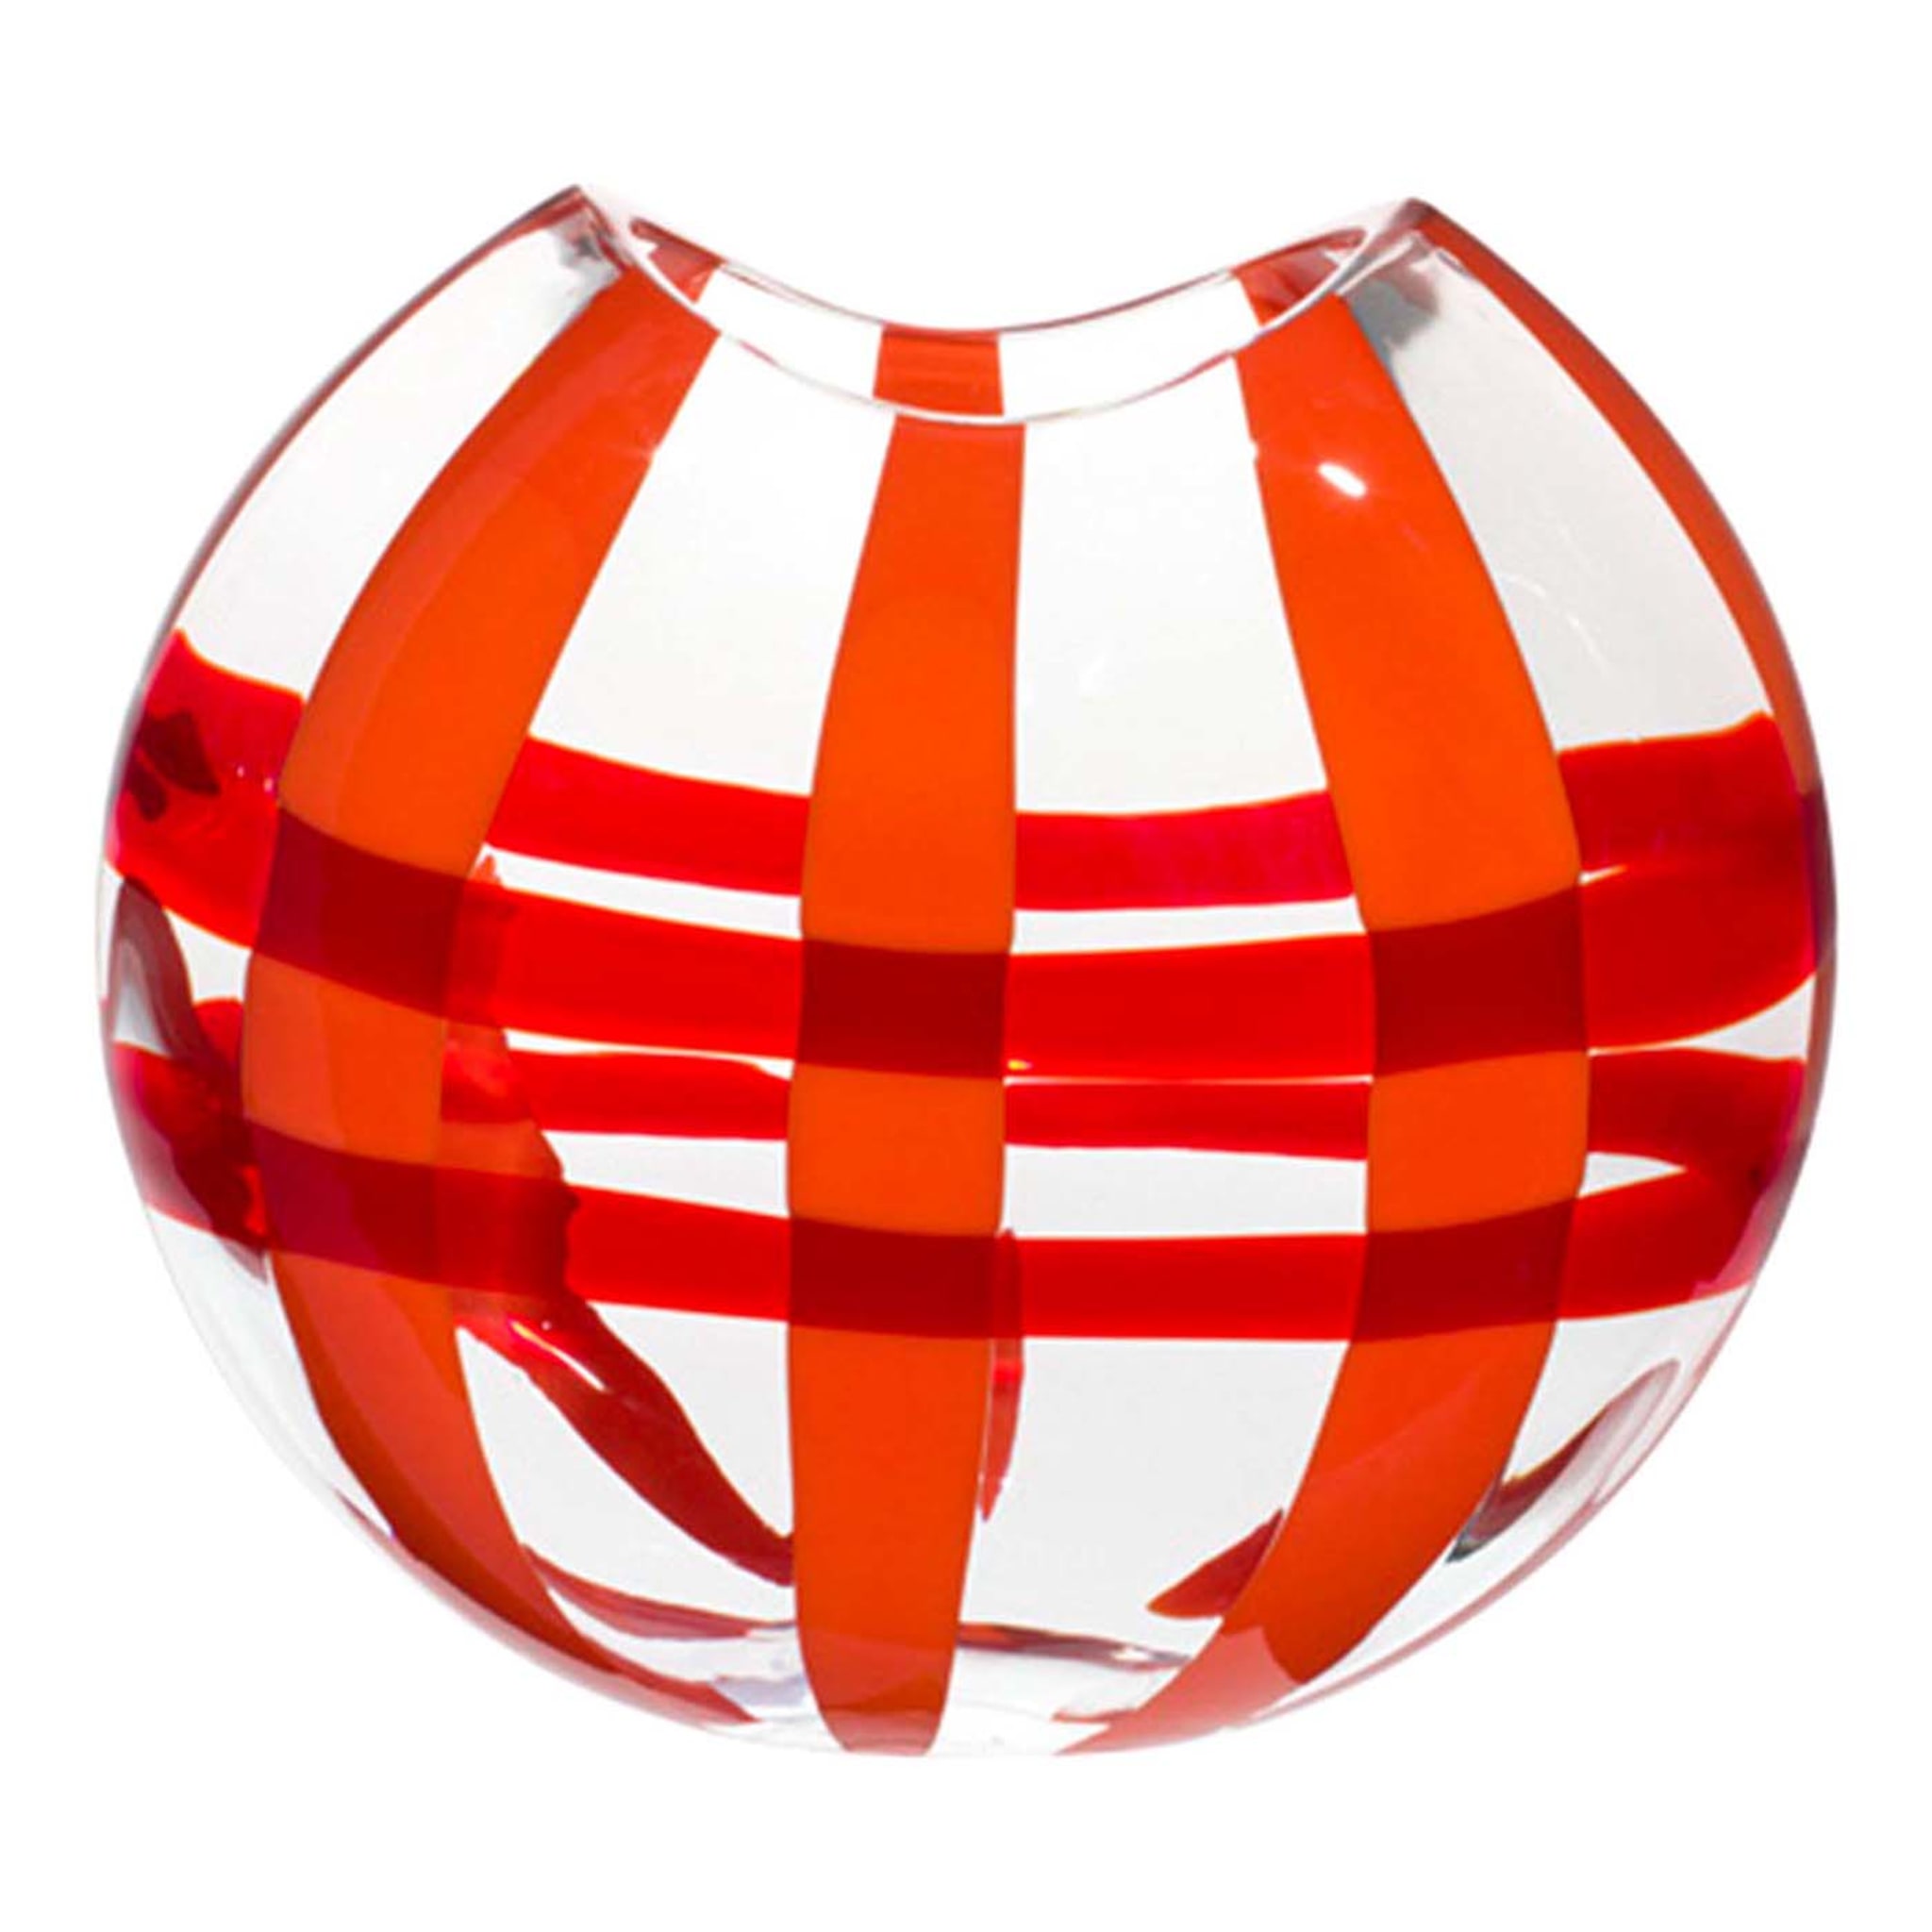 Transparente Vase Eclissi mit roten und orangefarbenen Streifen von Carlo Moretti - Hauptansicht